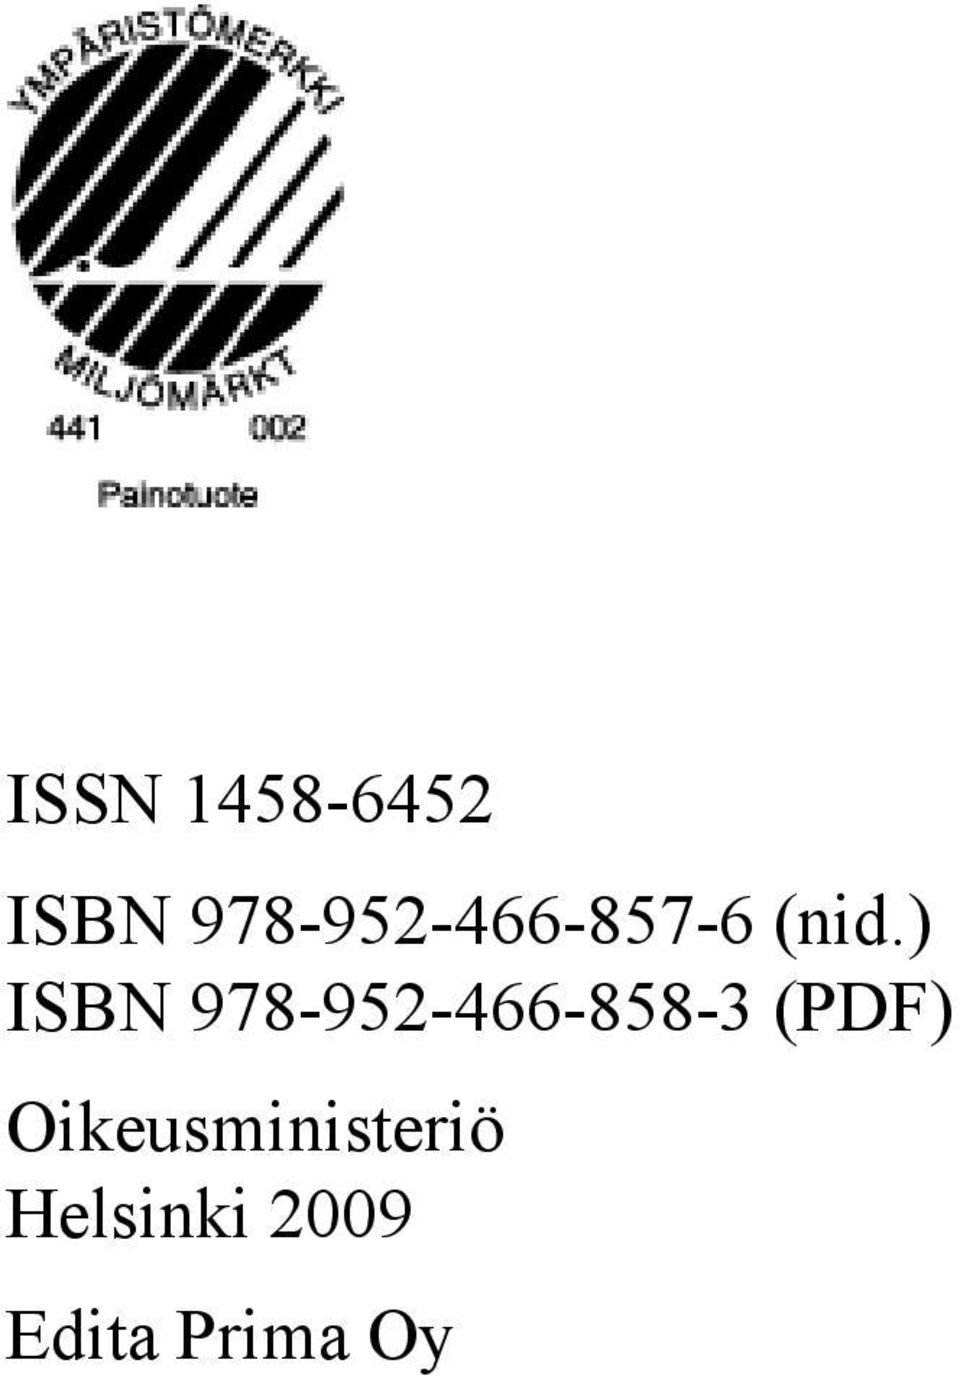 ) ISBN 978-952-466-858-3